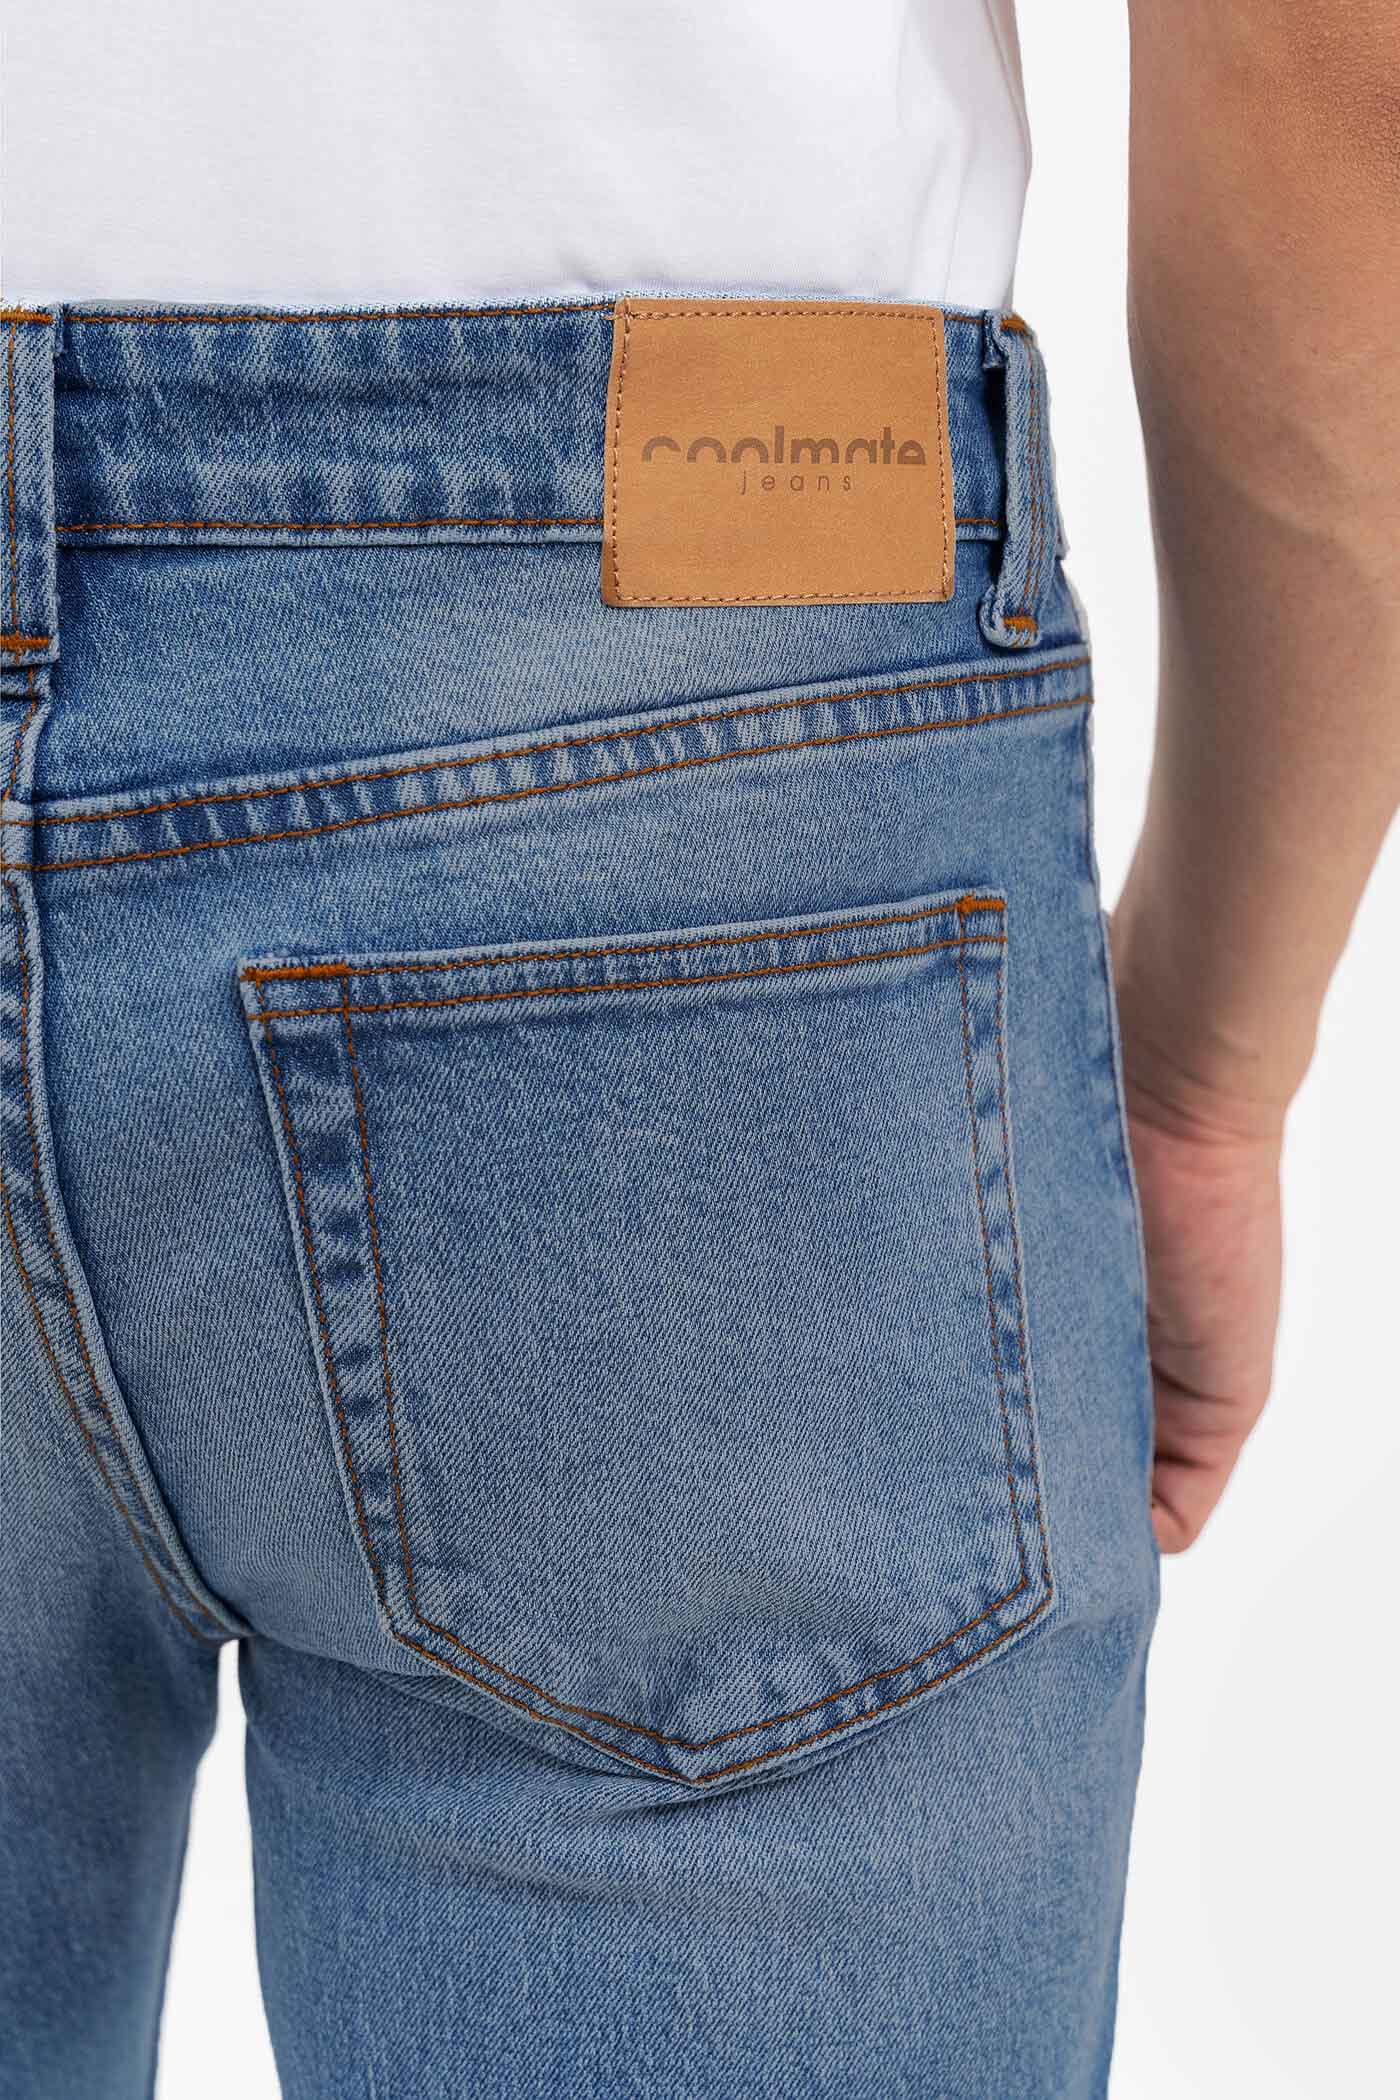 FLASH SALE - Quần Jeans Clean Denim dáng Slimfit  S3 Xanh nhạt 4